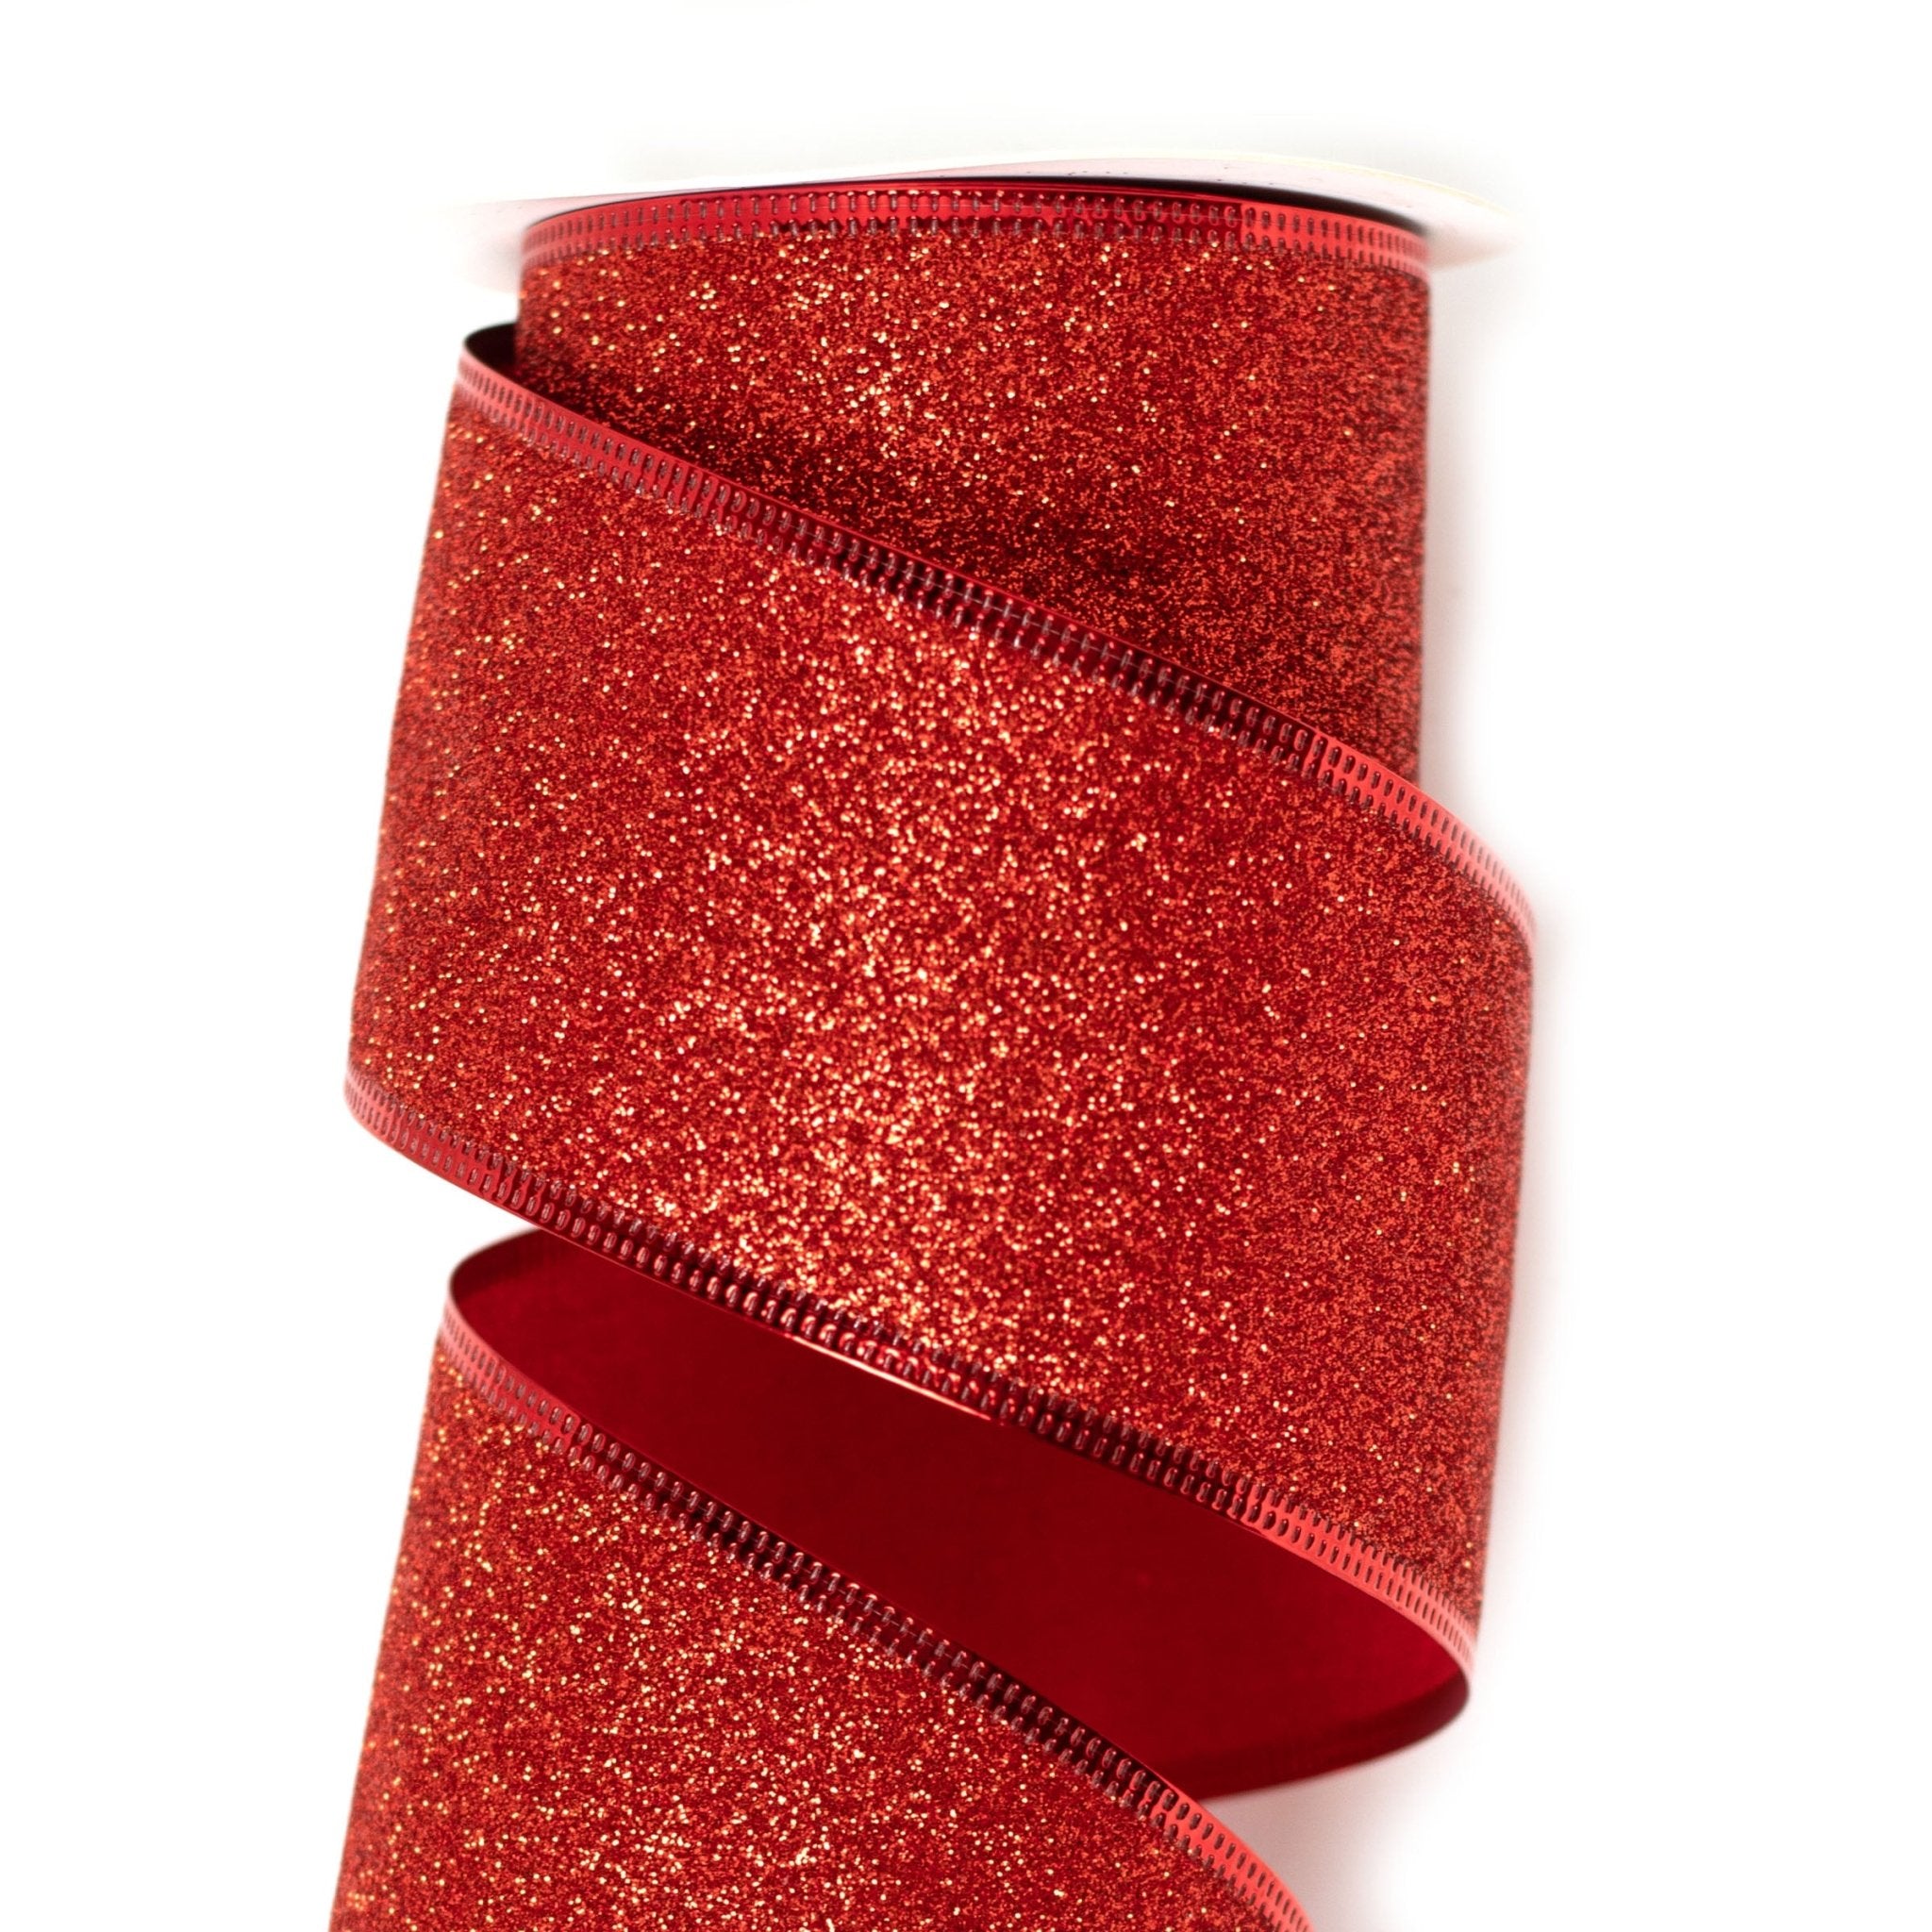 63mm x 9M Red Glitter Wired Ribbon 6309021 - MODA FLORA Santa's Workshop